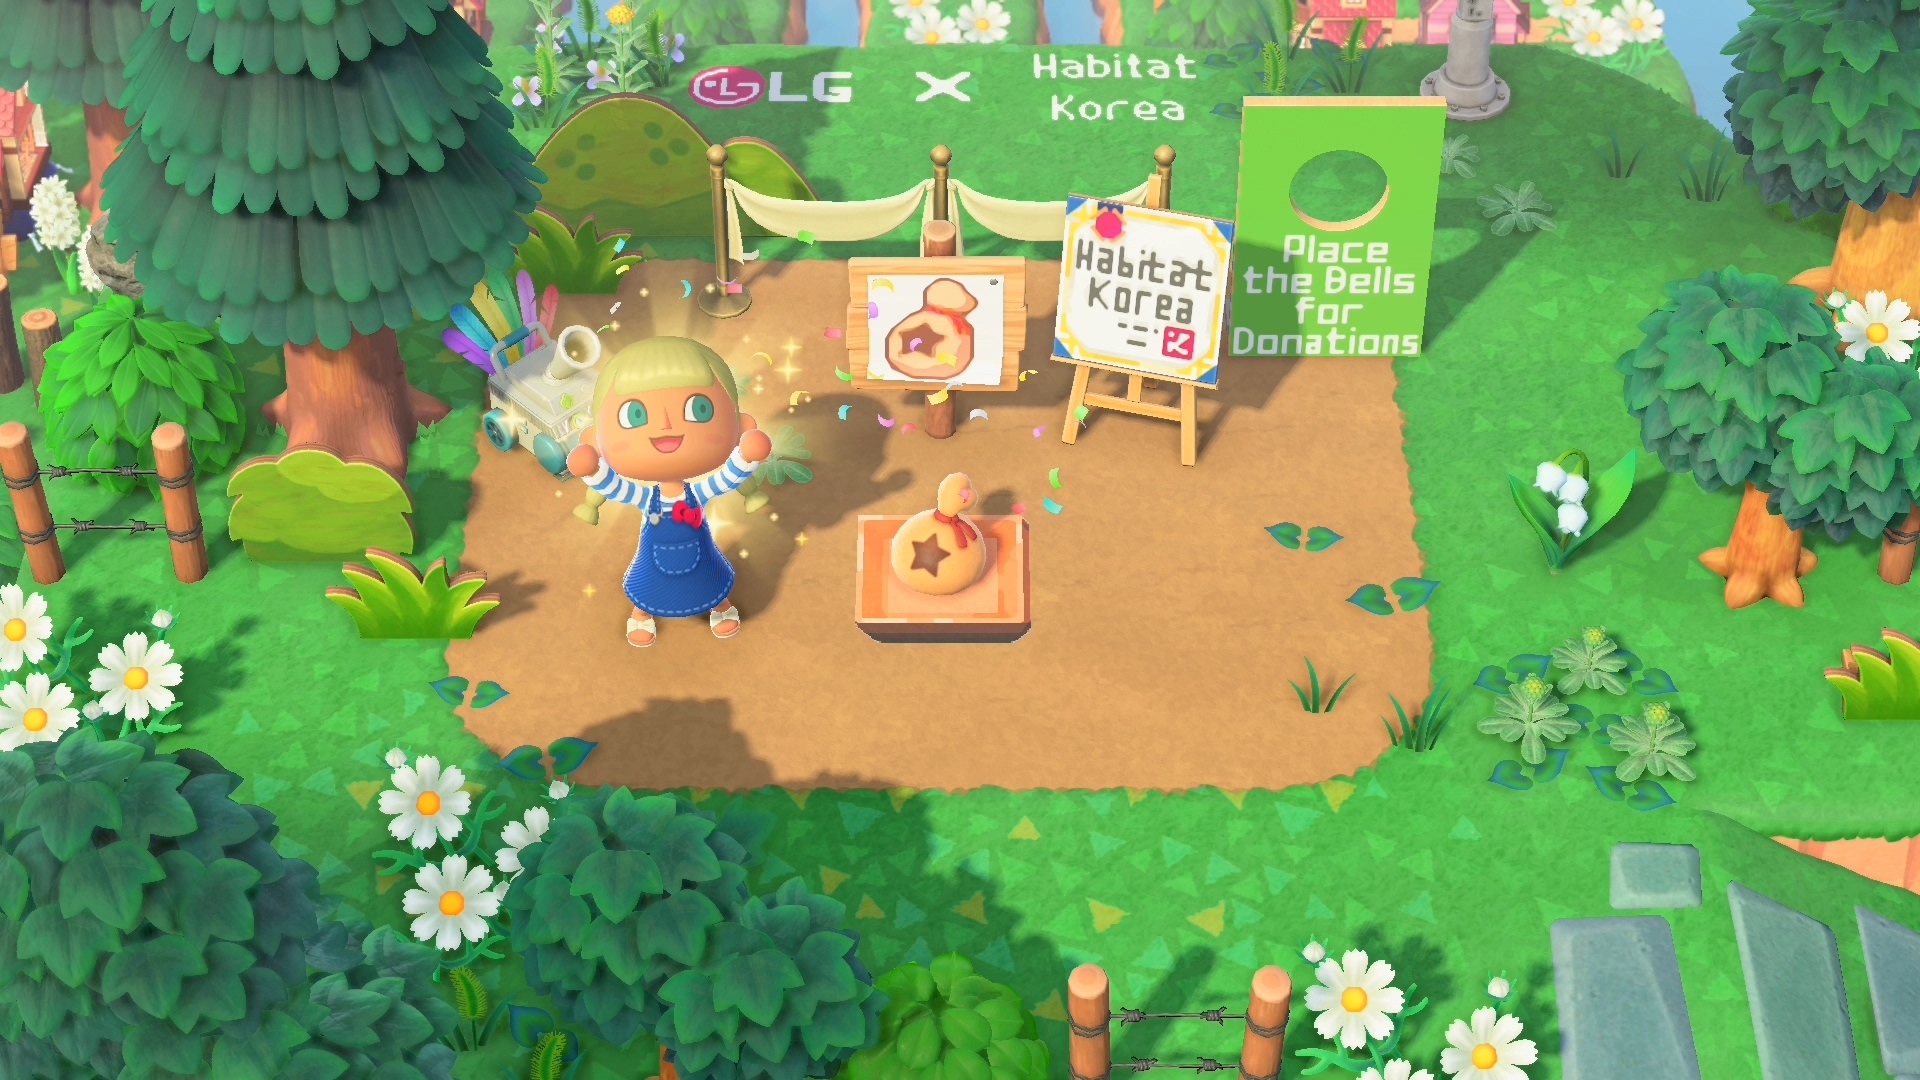 یک شخصیت بازیکن در بازی Animal Crossing در Habitat Korea Zone LG Home Island ژست می گیرد.